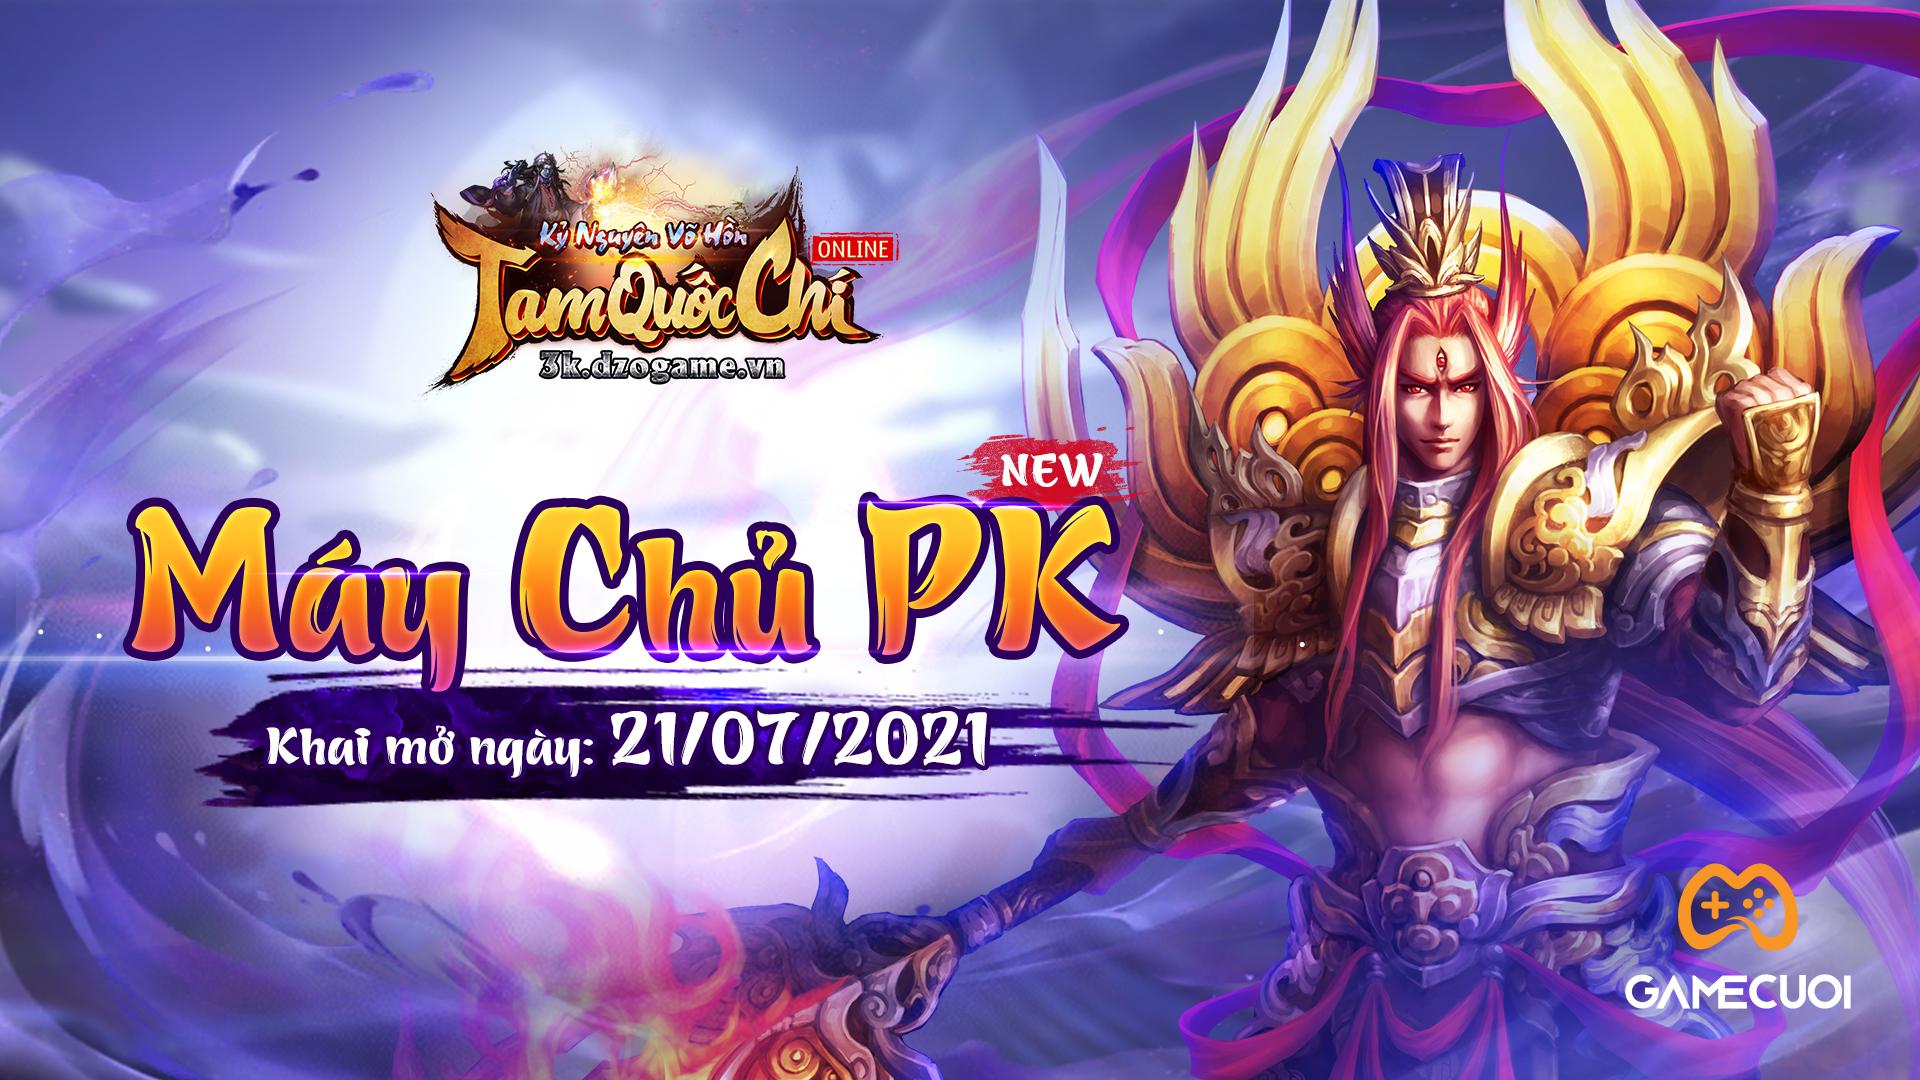 Tam Quốc Chí ra mắt máy chủ mới Lữ Bố – Thiên đường PK cho game thủ